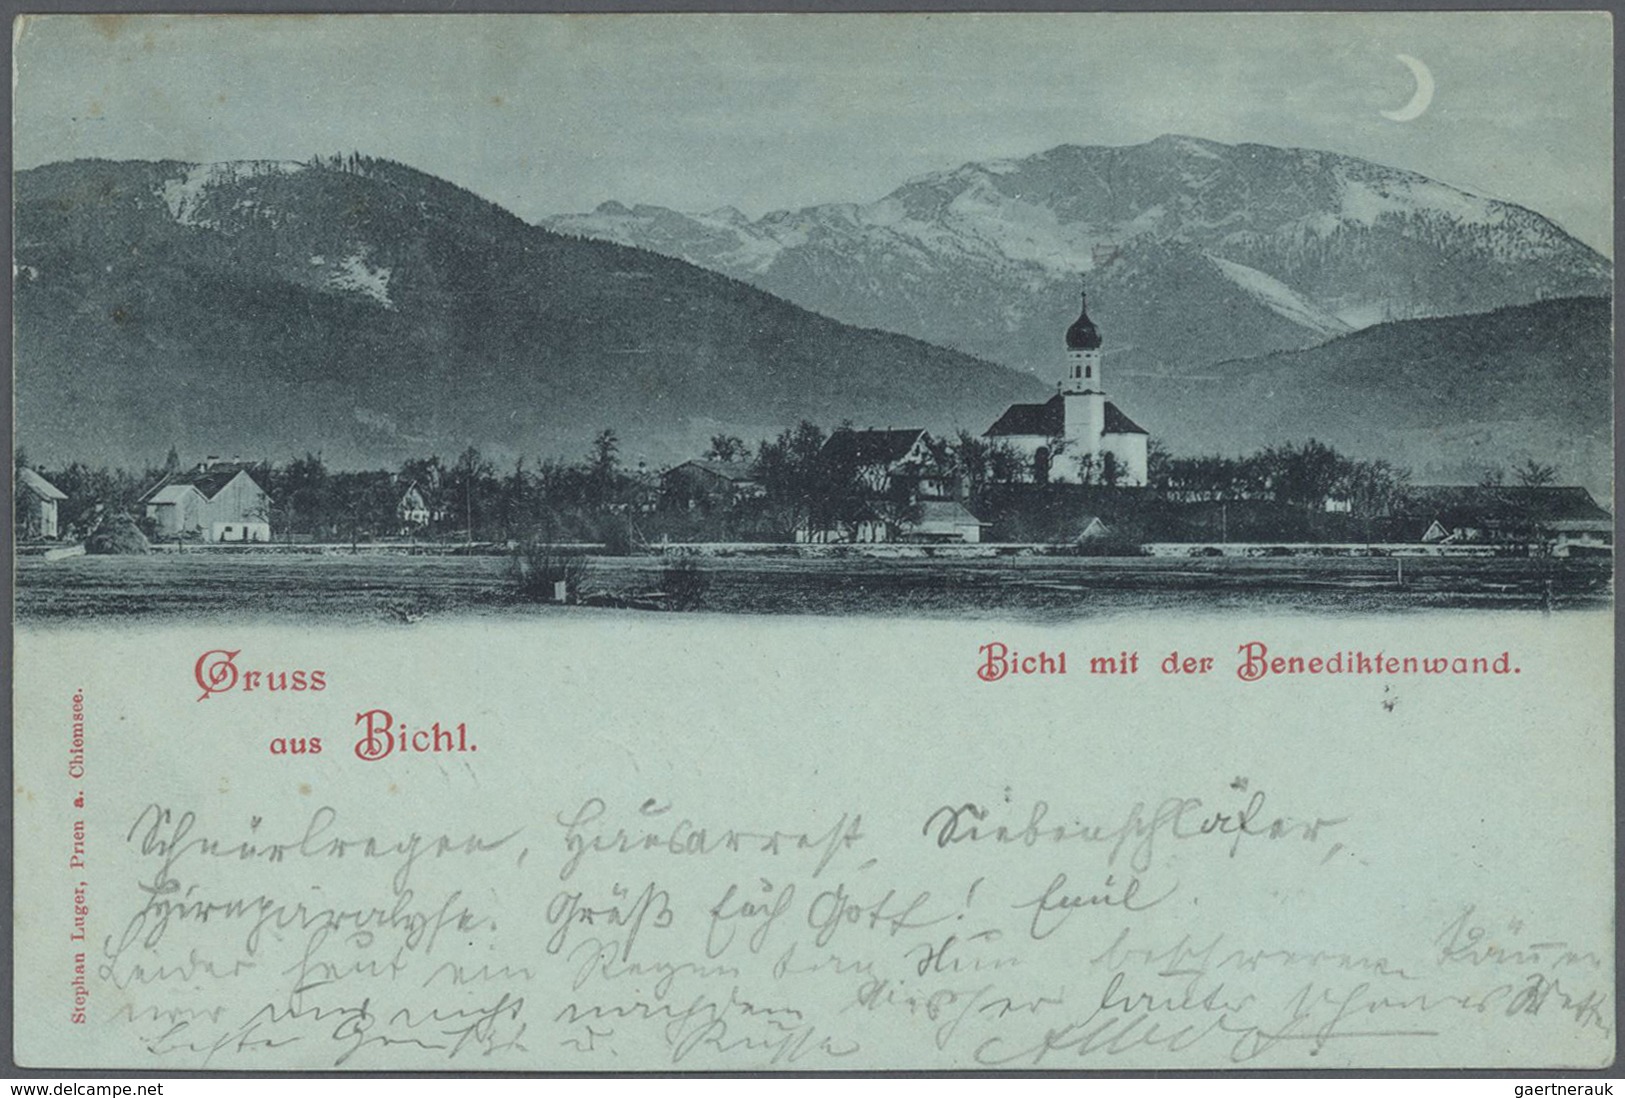 Ansichtskarten: Bayern: BAD TÖLZ und Umgebung (alte PLZ 817), mit u.a. Jachenau, Lenggries, Bad Heil